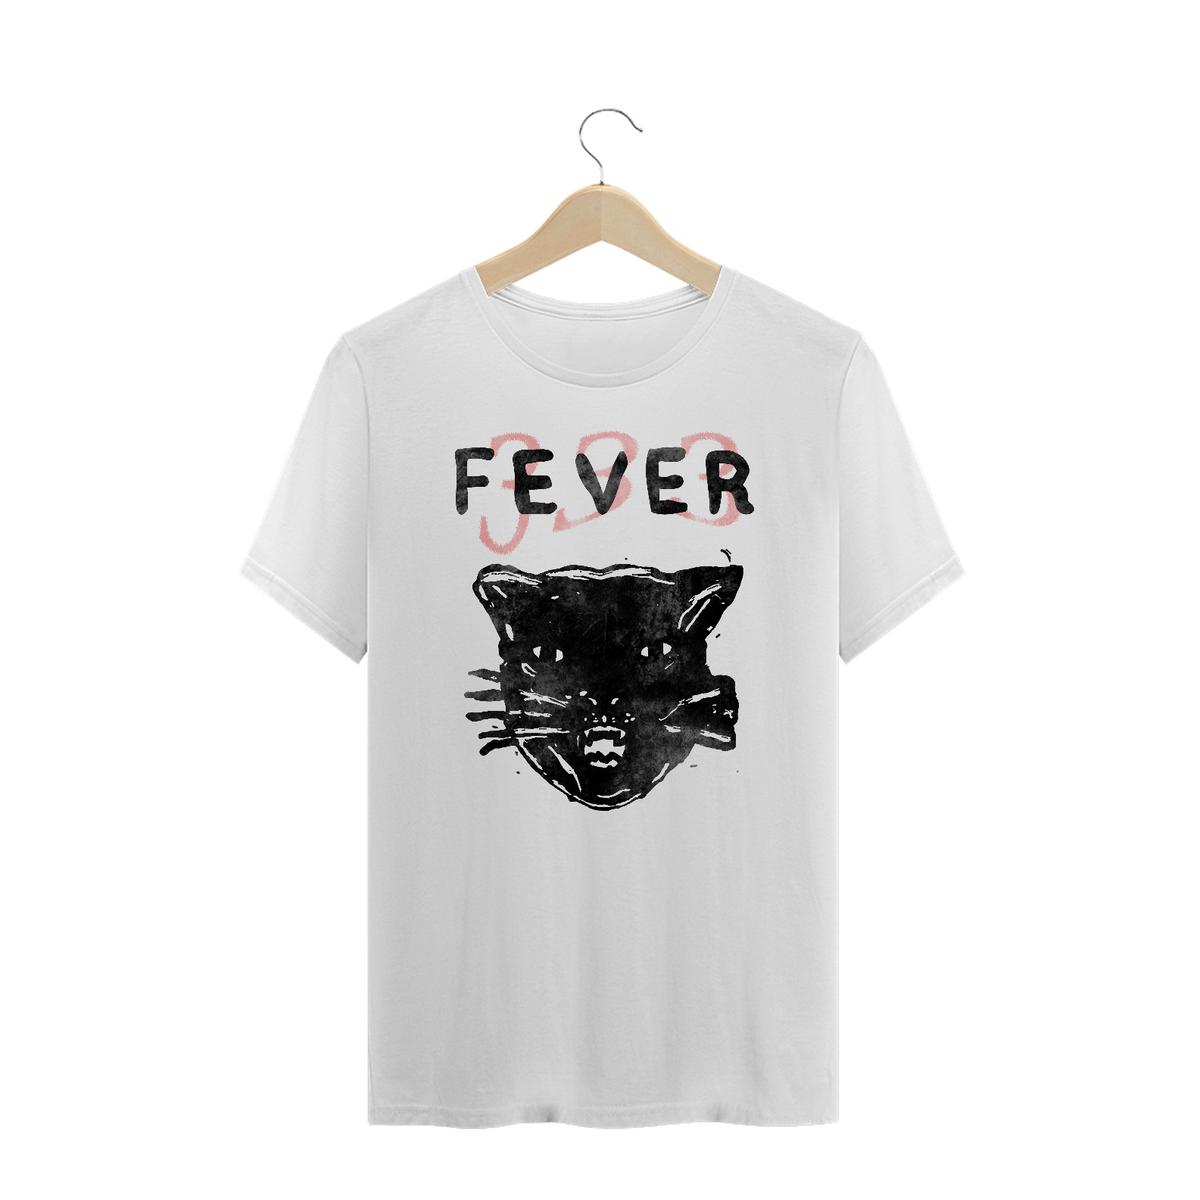 Nome do produto: The Fever 333 - Plus Size